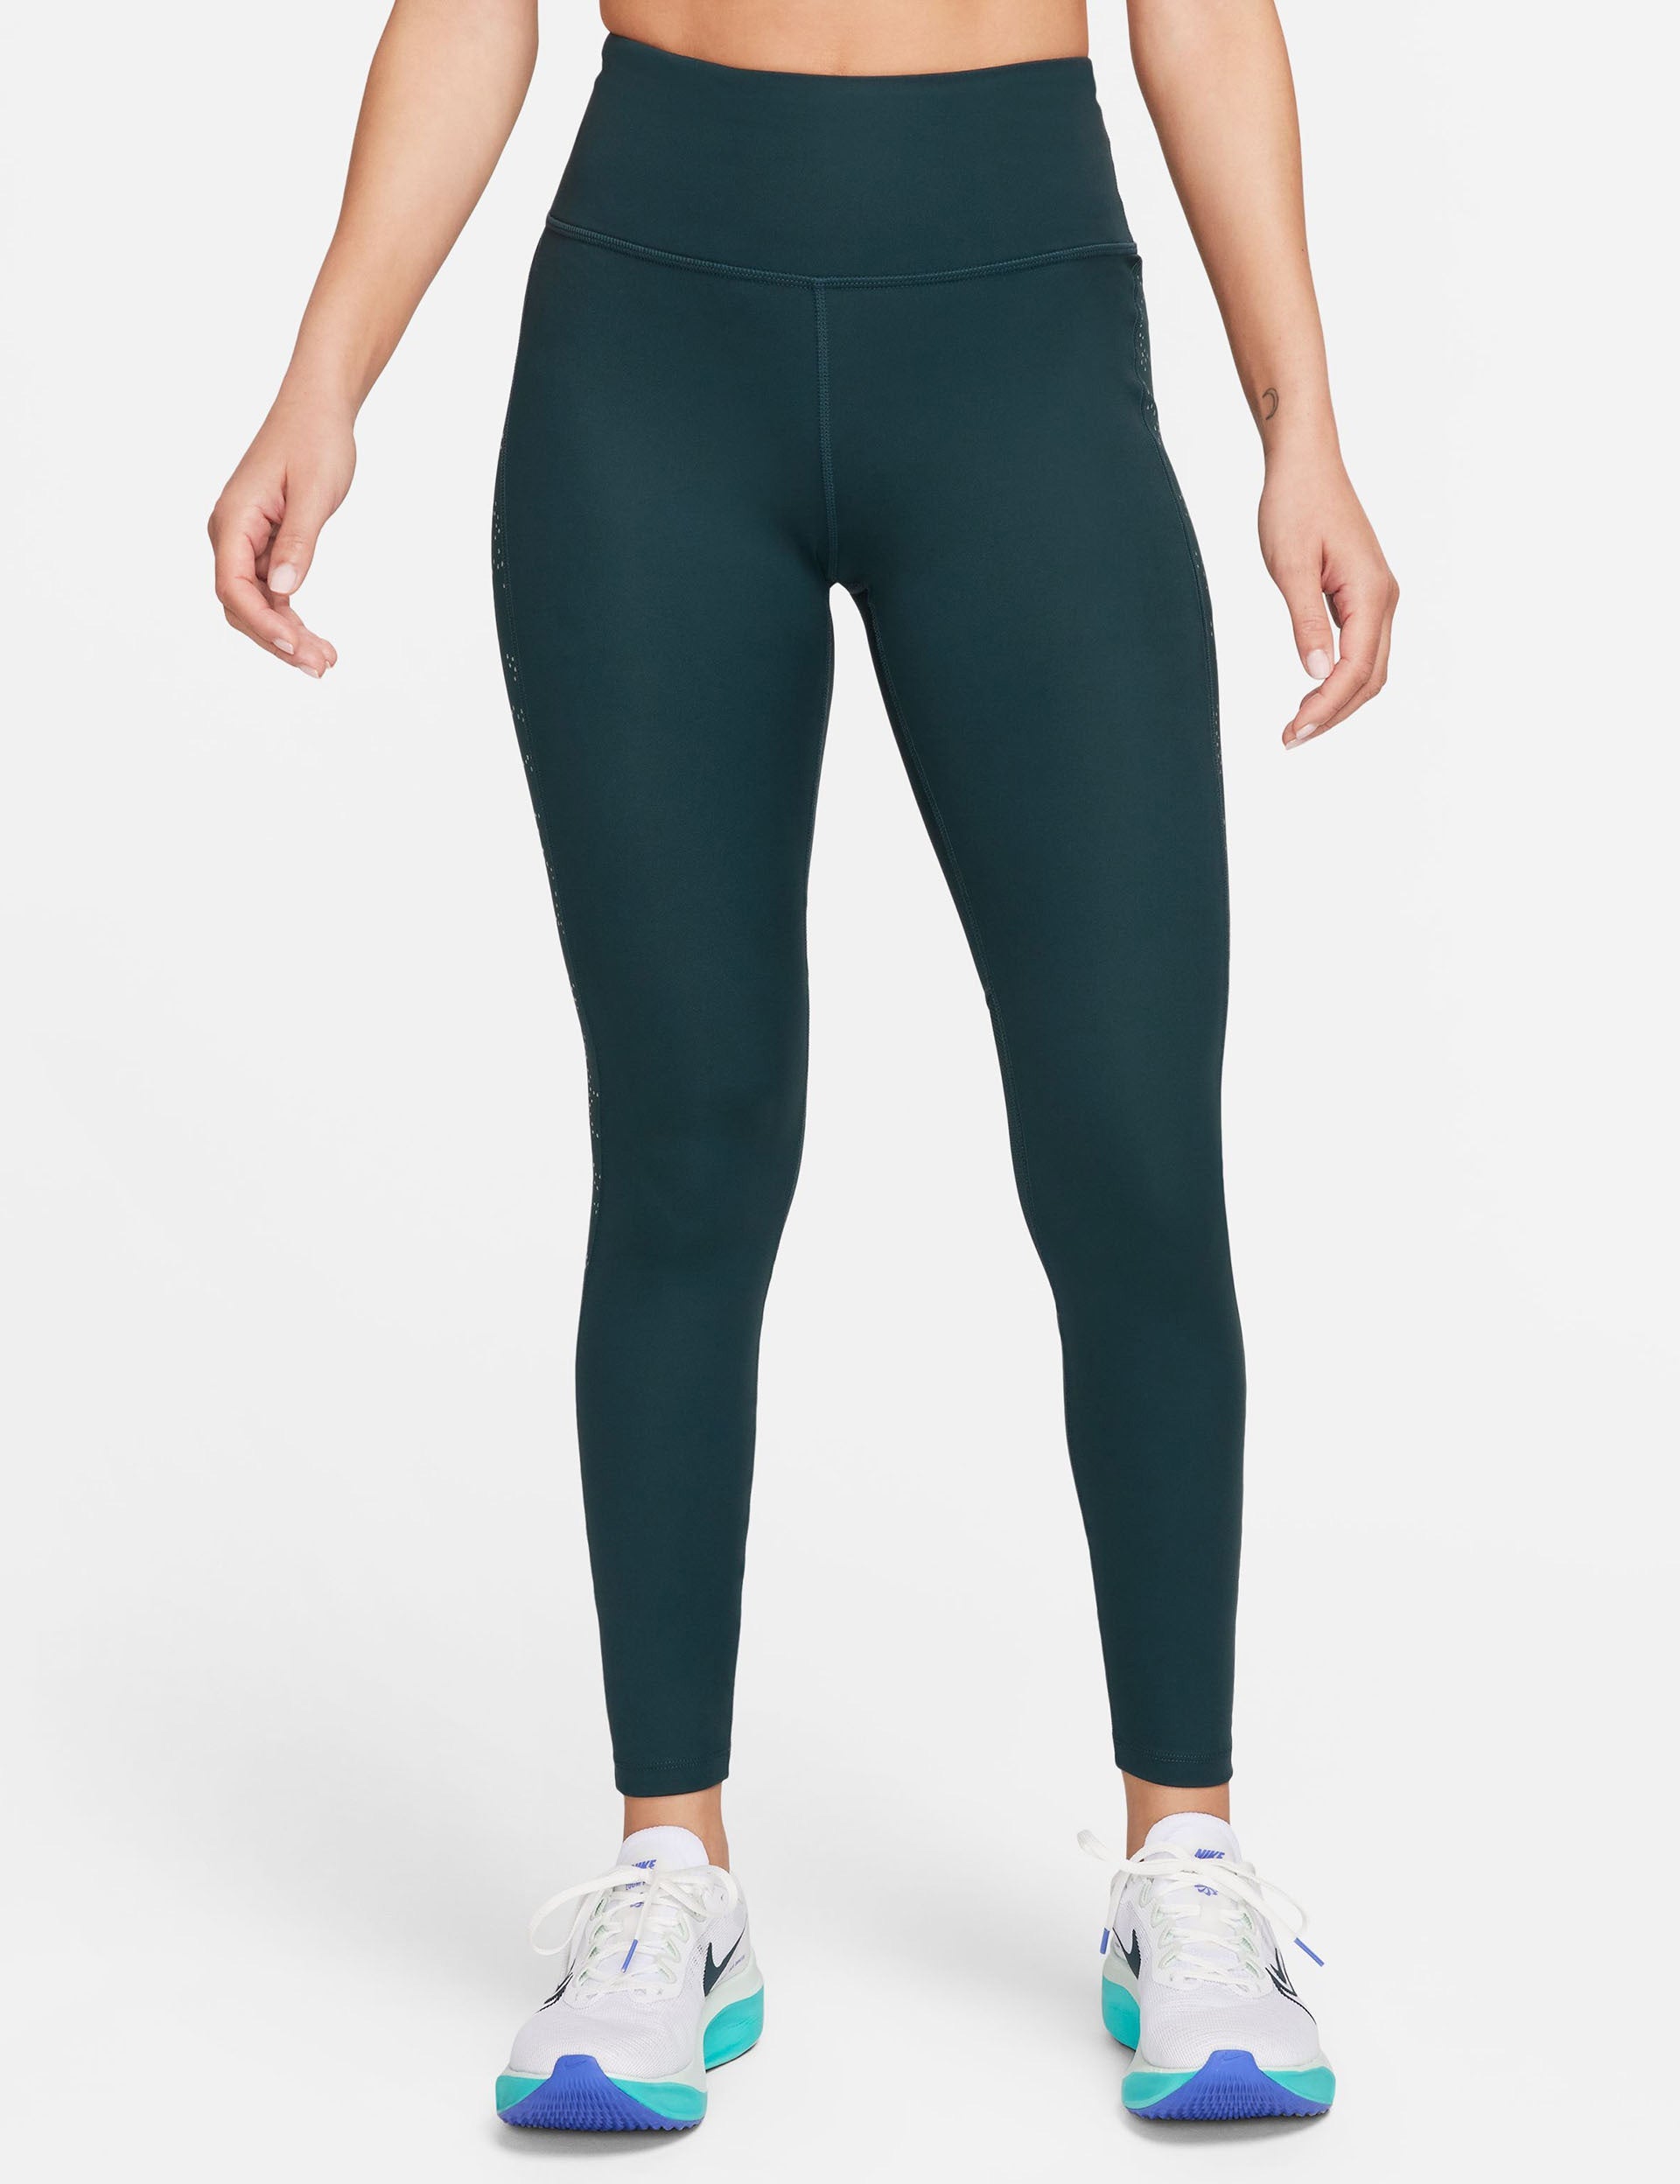 Nike Sportswear Leggings - Trousers - fir/dark green 